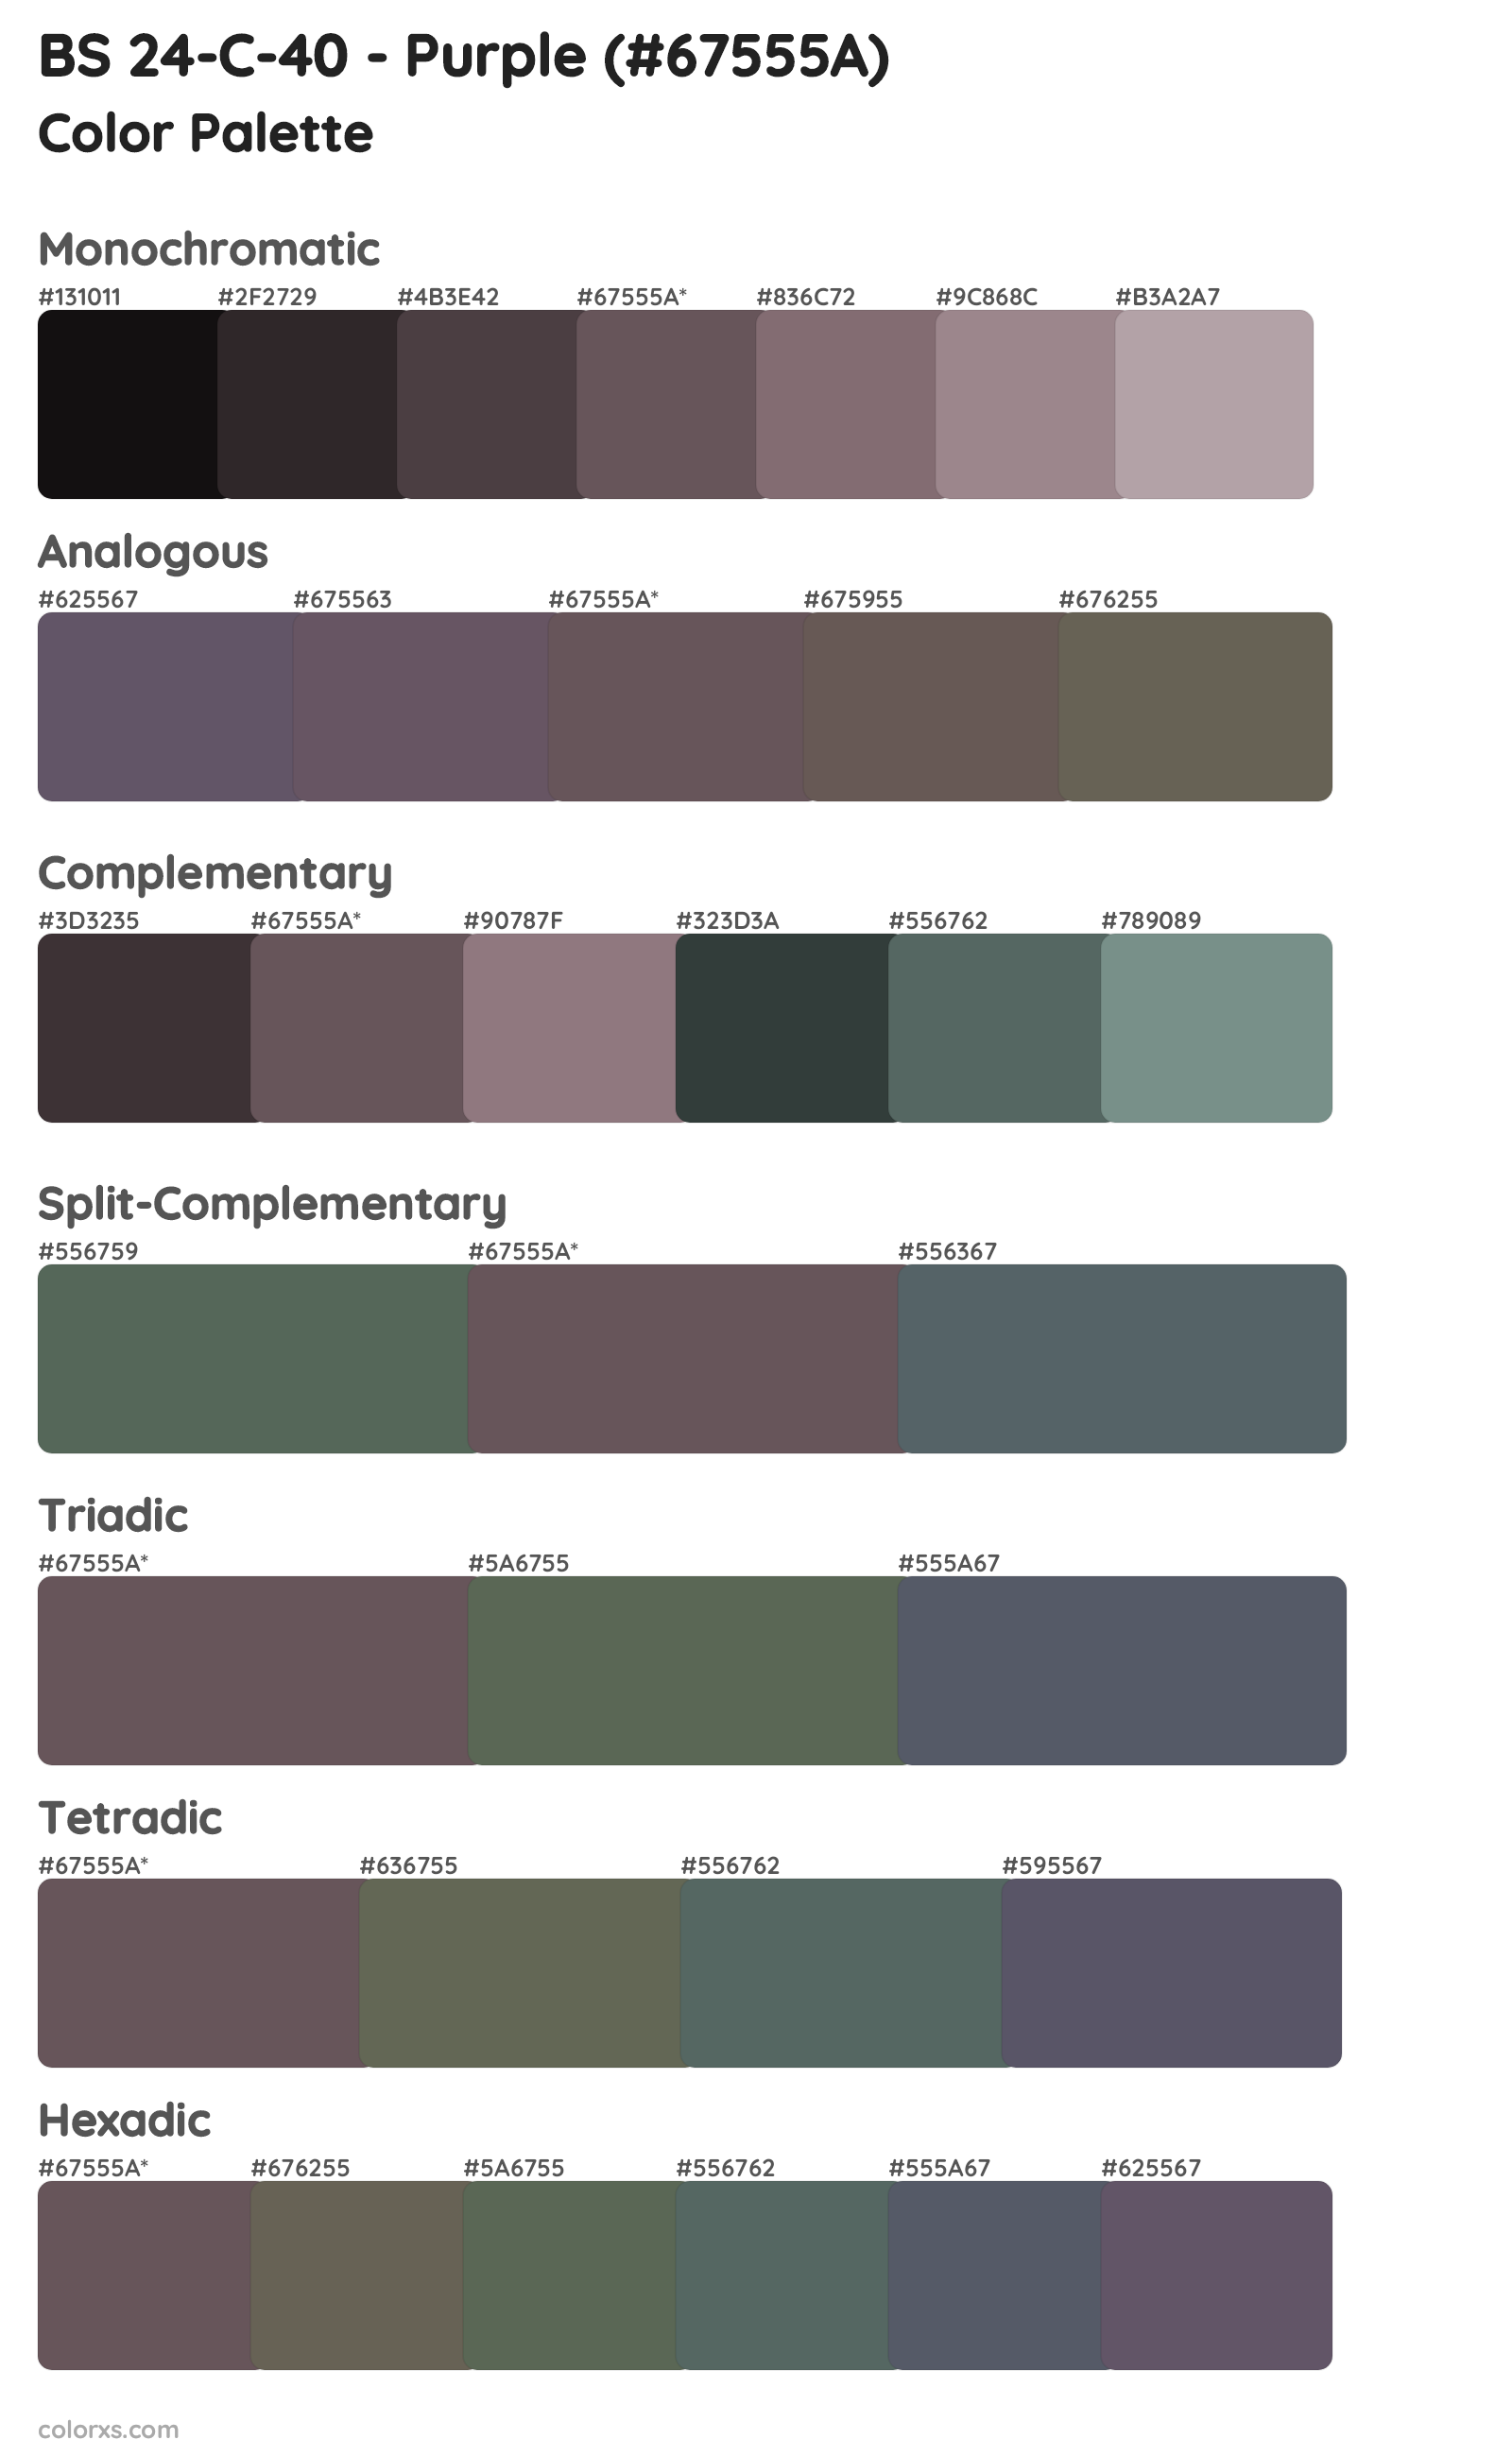 BS 24-C-40 - Purple Color Scheme Palettes